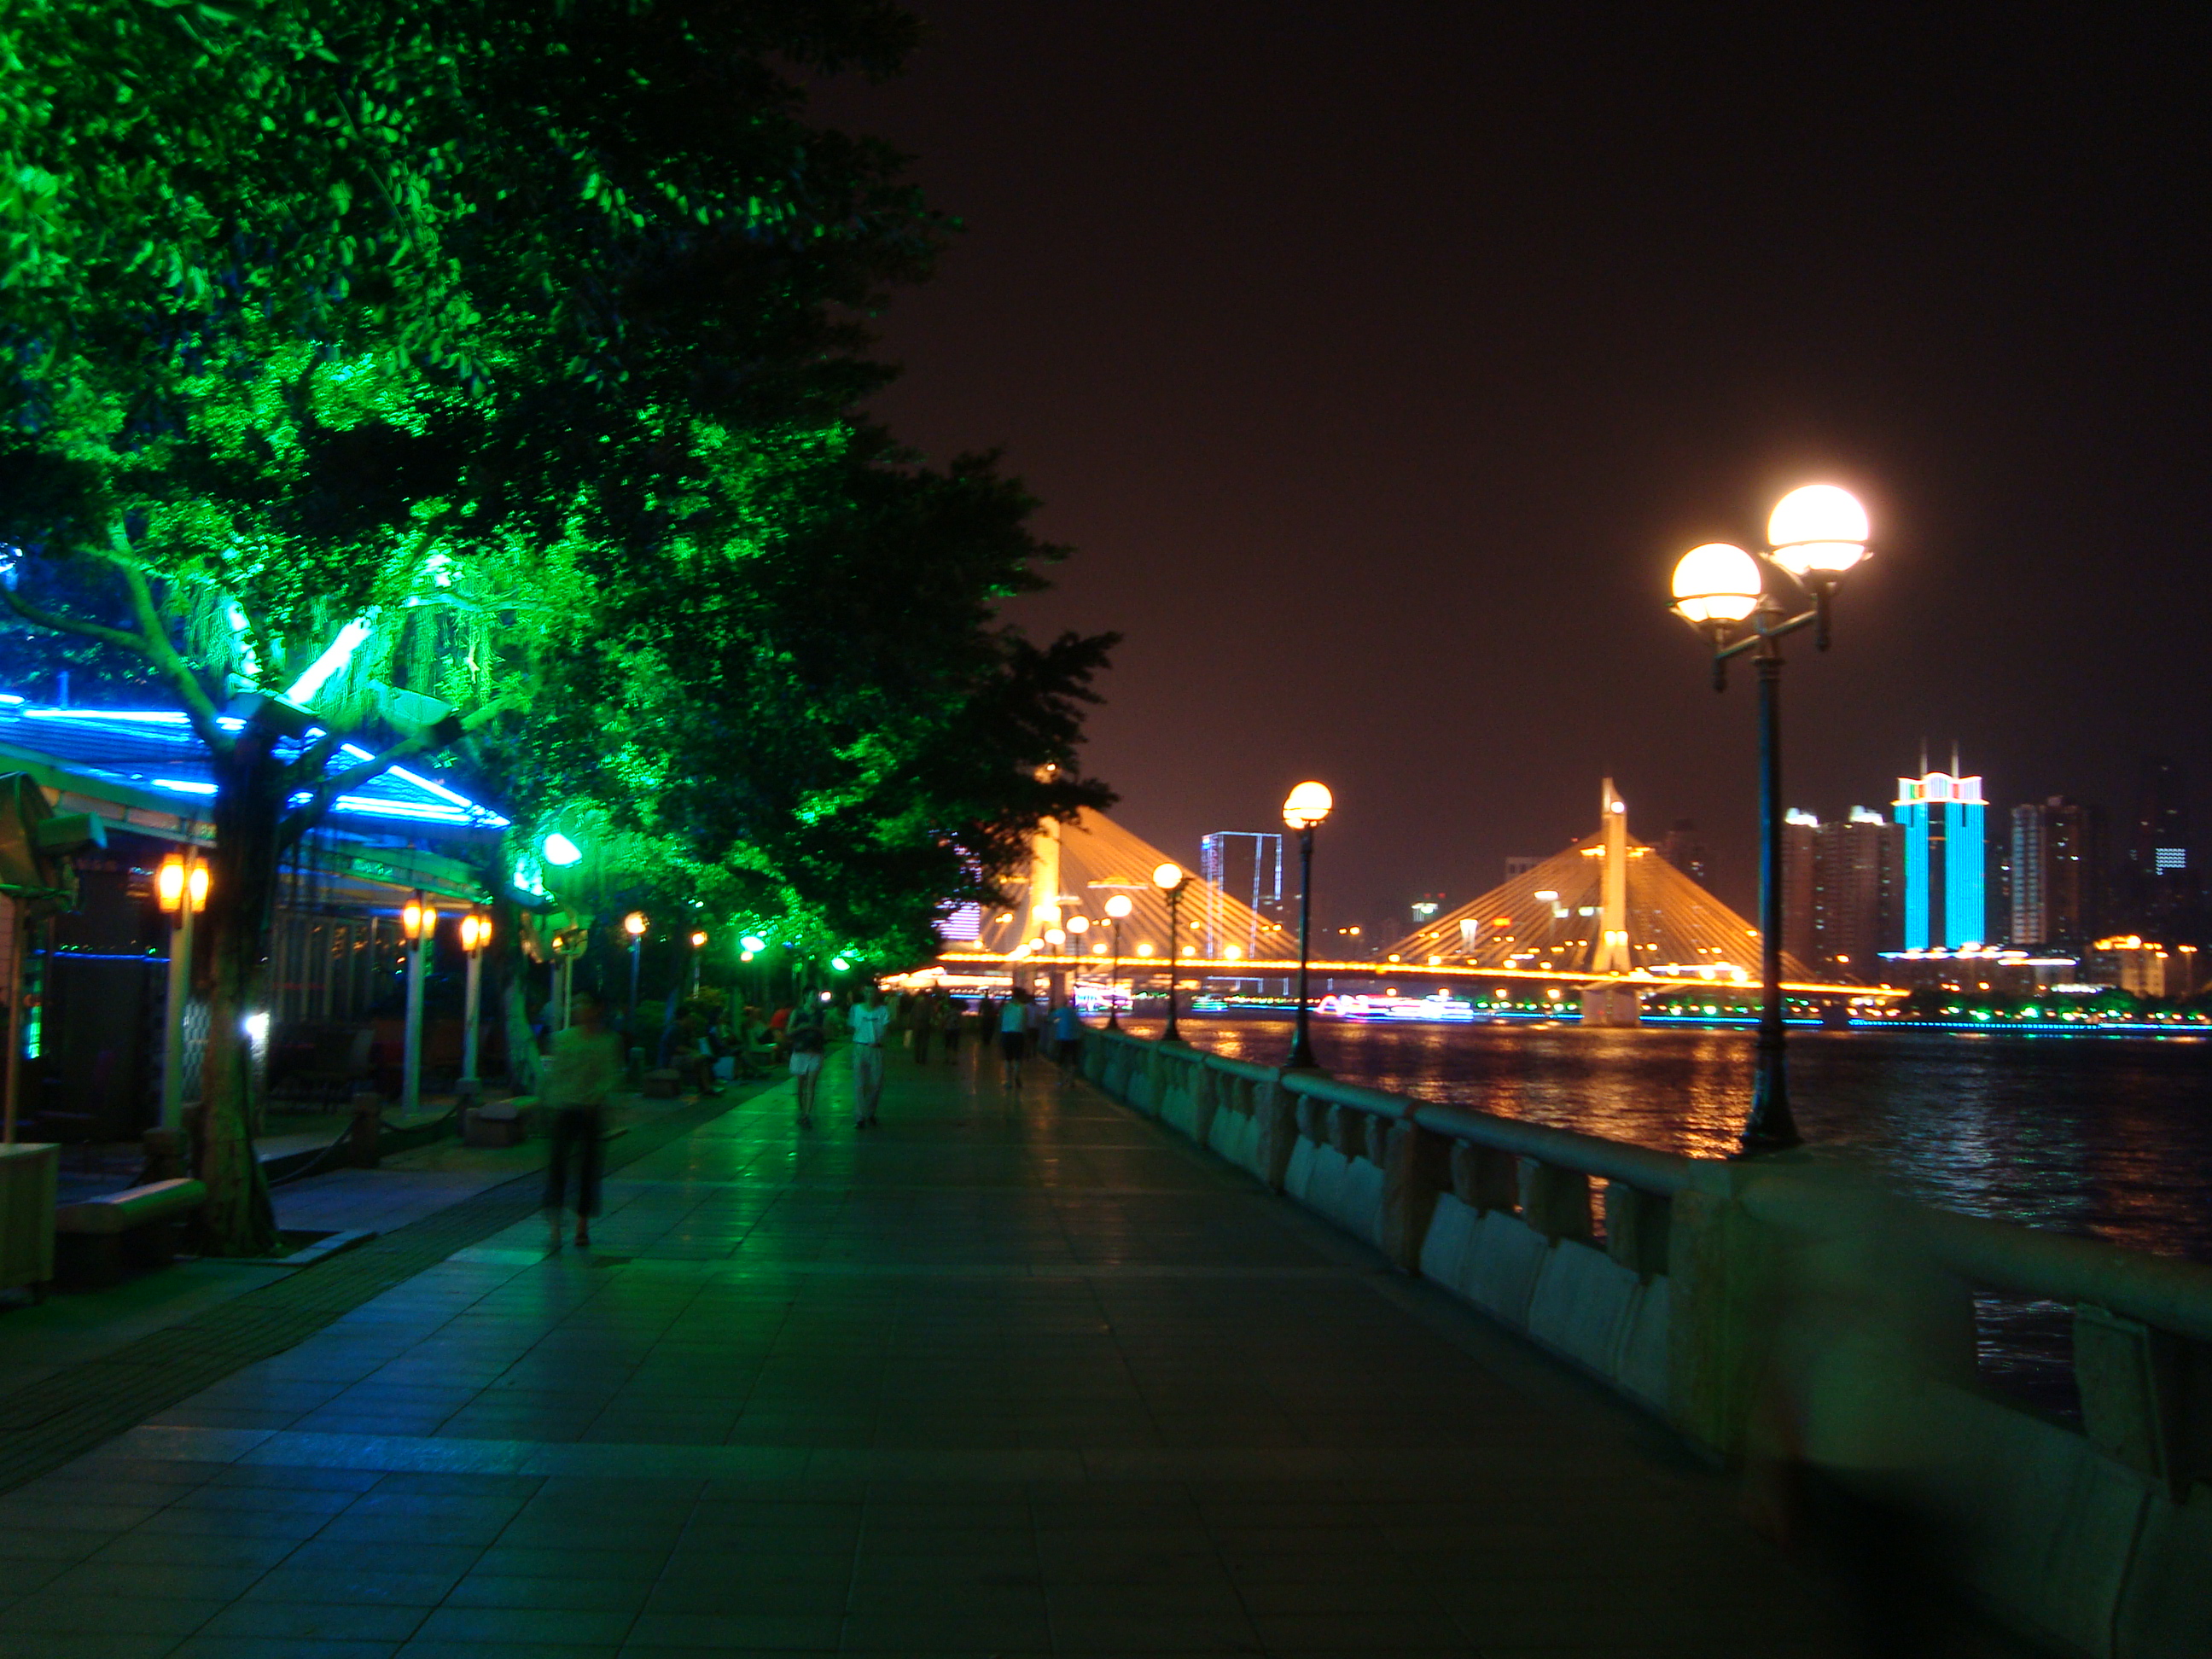 滨江路夜景图片